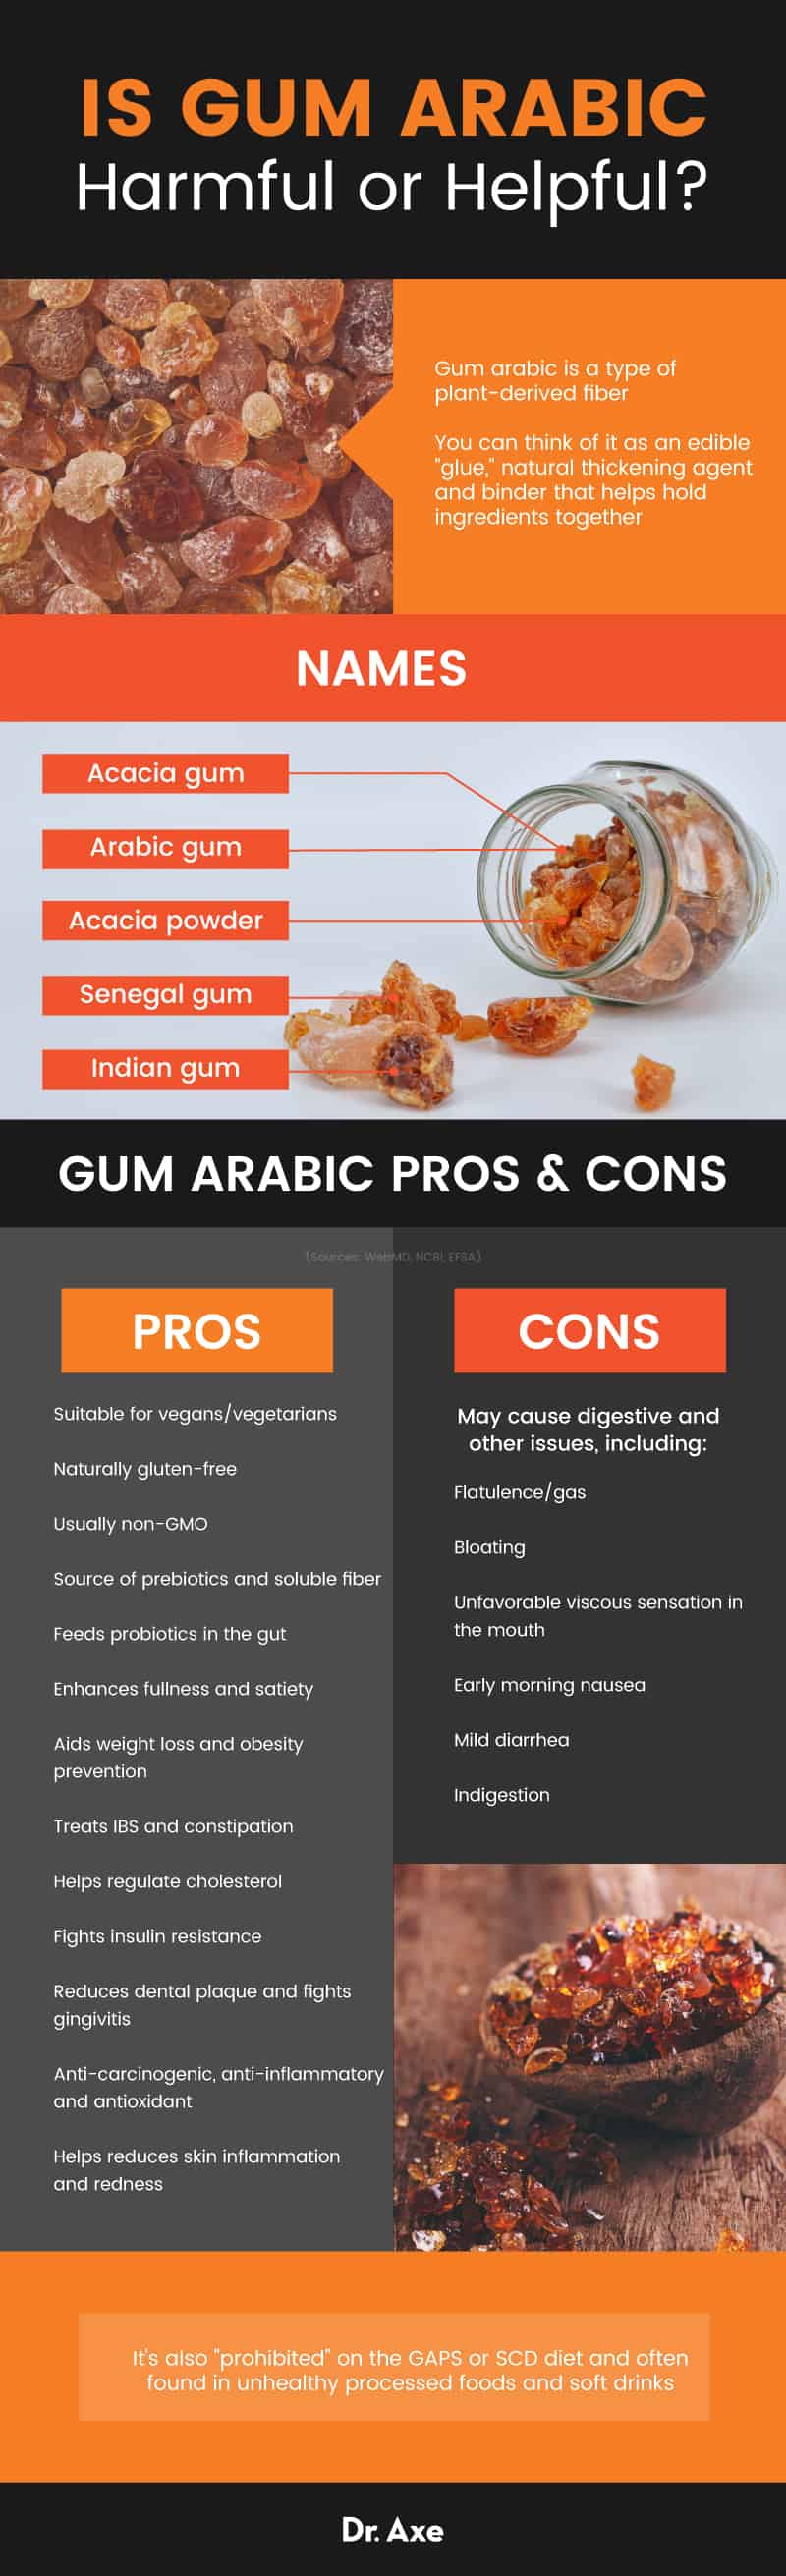 Gum arabic - Dr. Axe